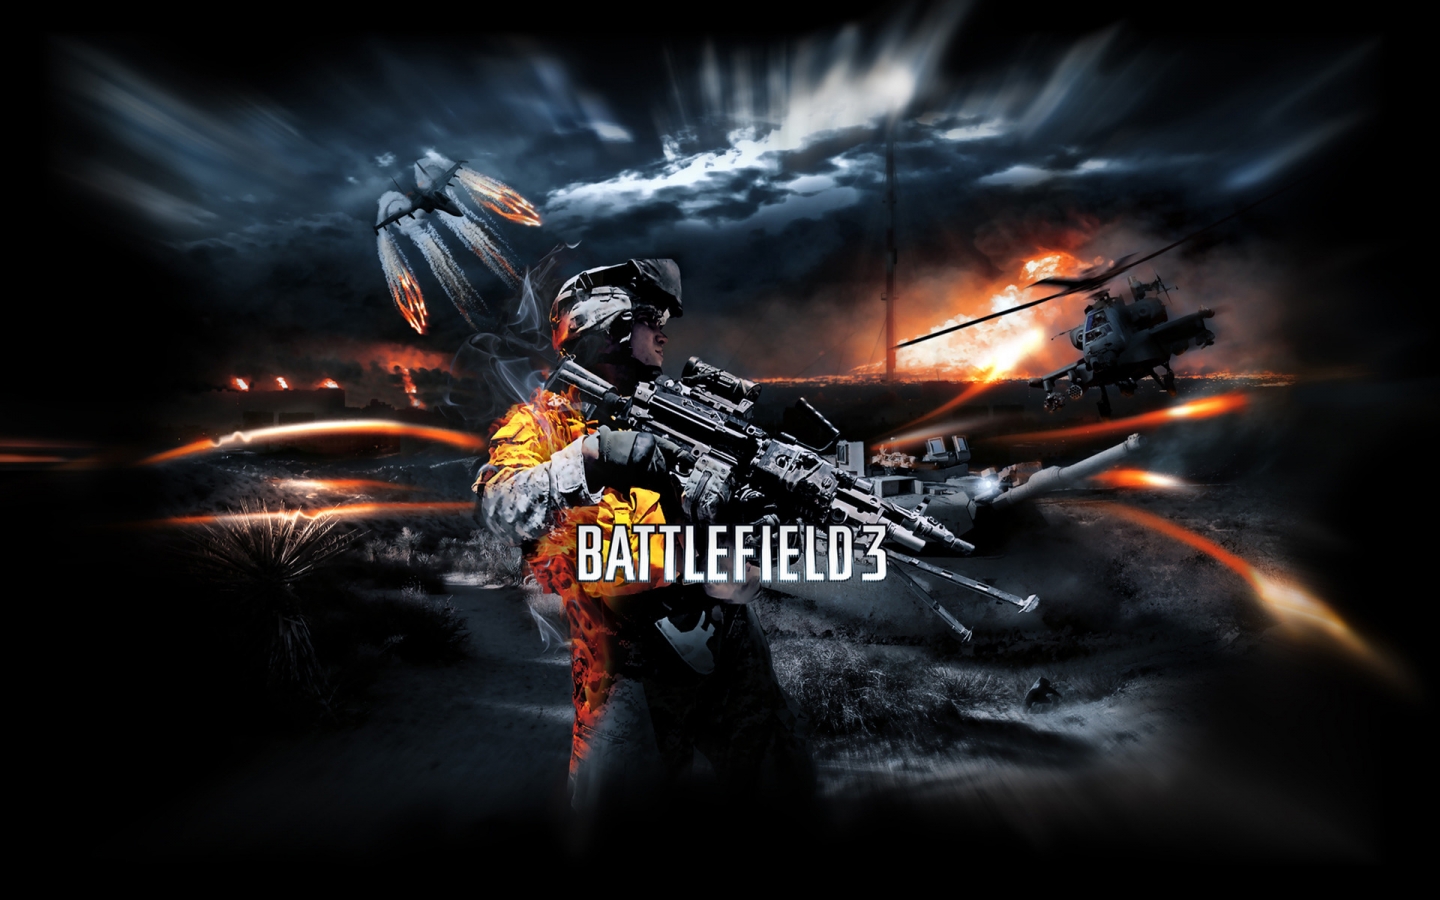 Battlefield 3 Poster for 1440 x 900 widescreen resolution